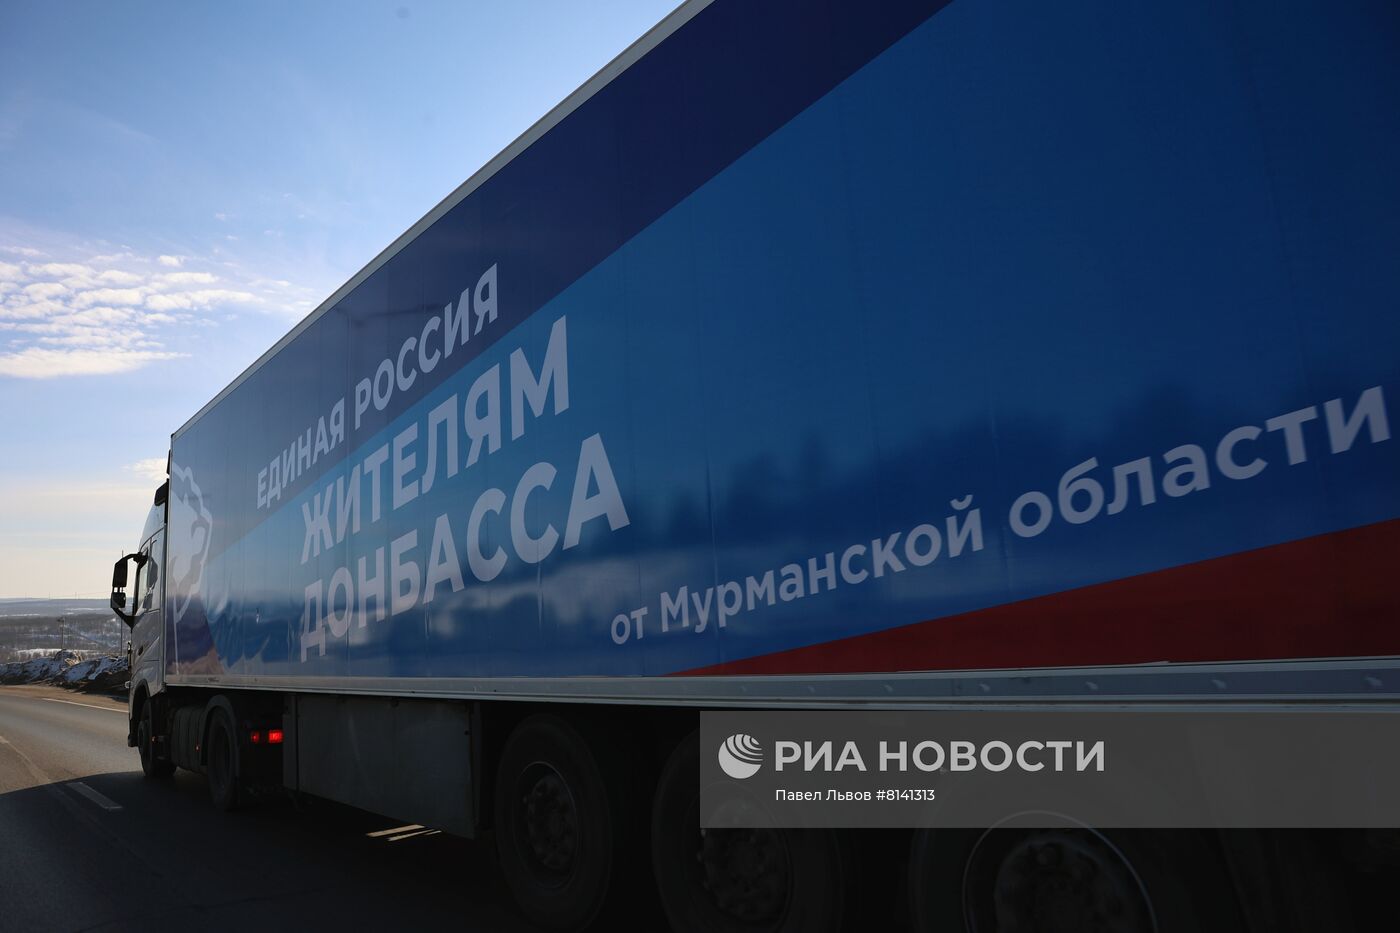 Отправление колонны с гуманитарной помощью для жителей Донбасса из Мурманска